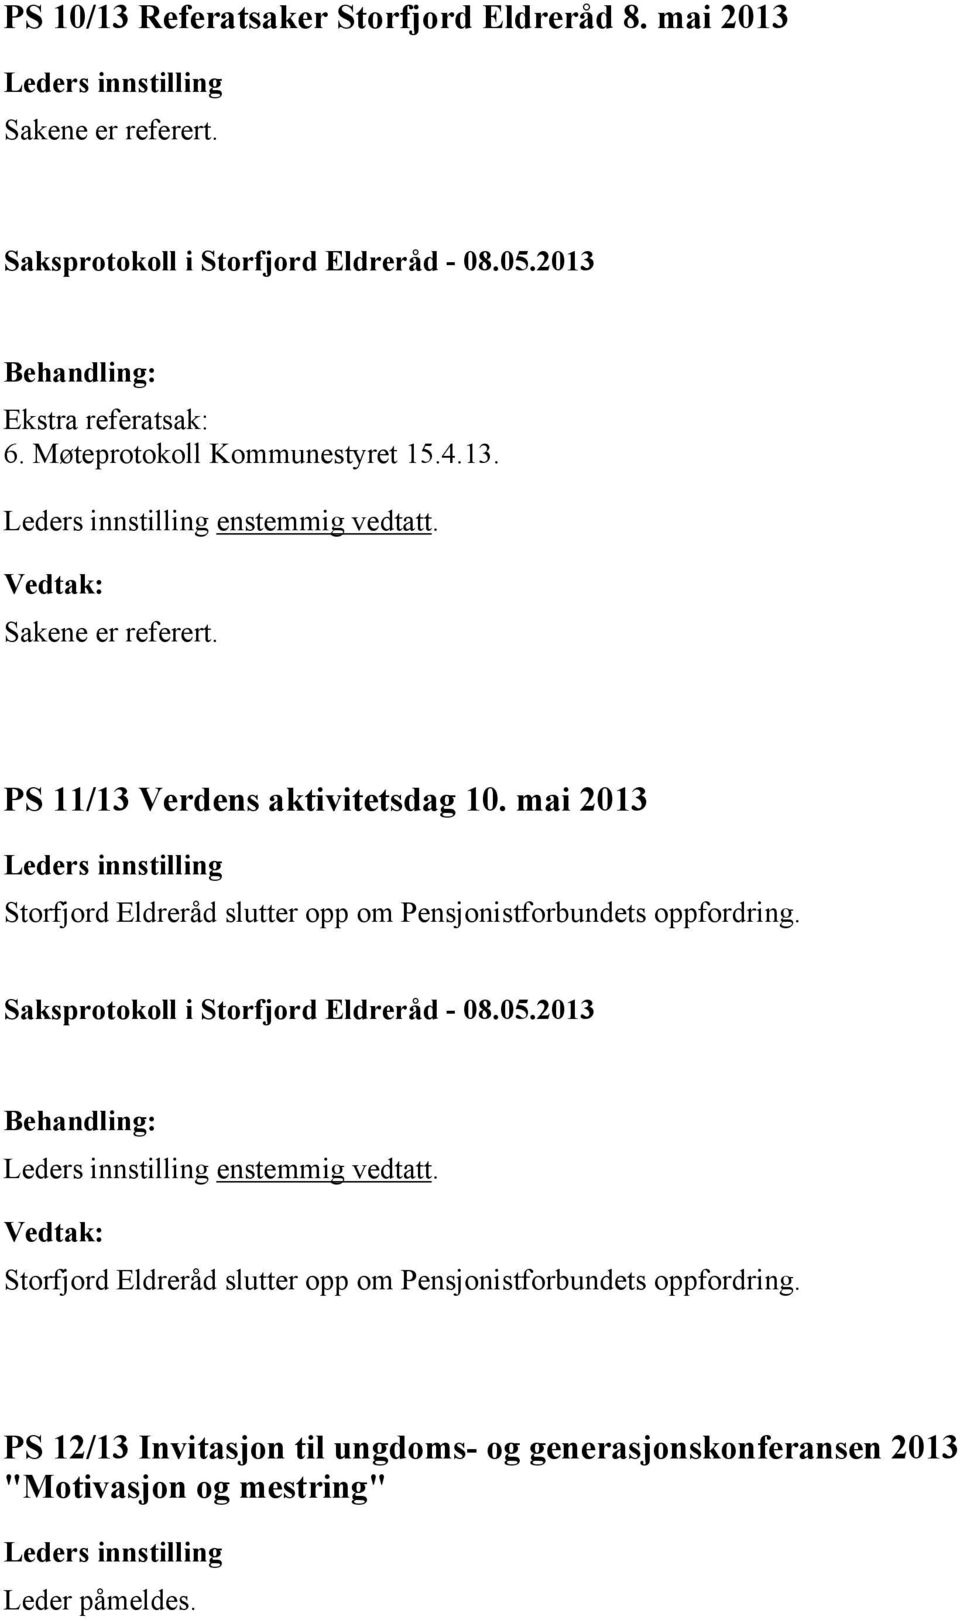 mai 2013 Storfjord Eldreråd slutter opp om Pensjonistforbundets oppfordring. enstemmig vedtatt.